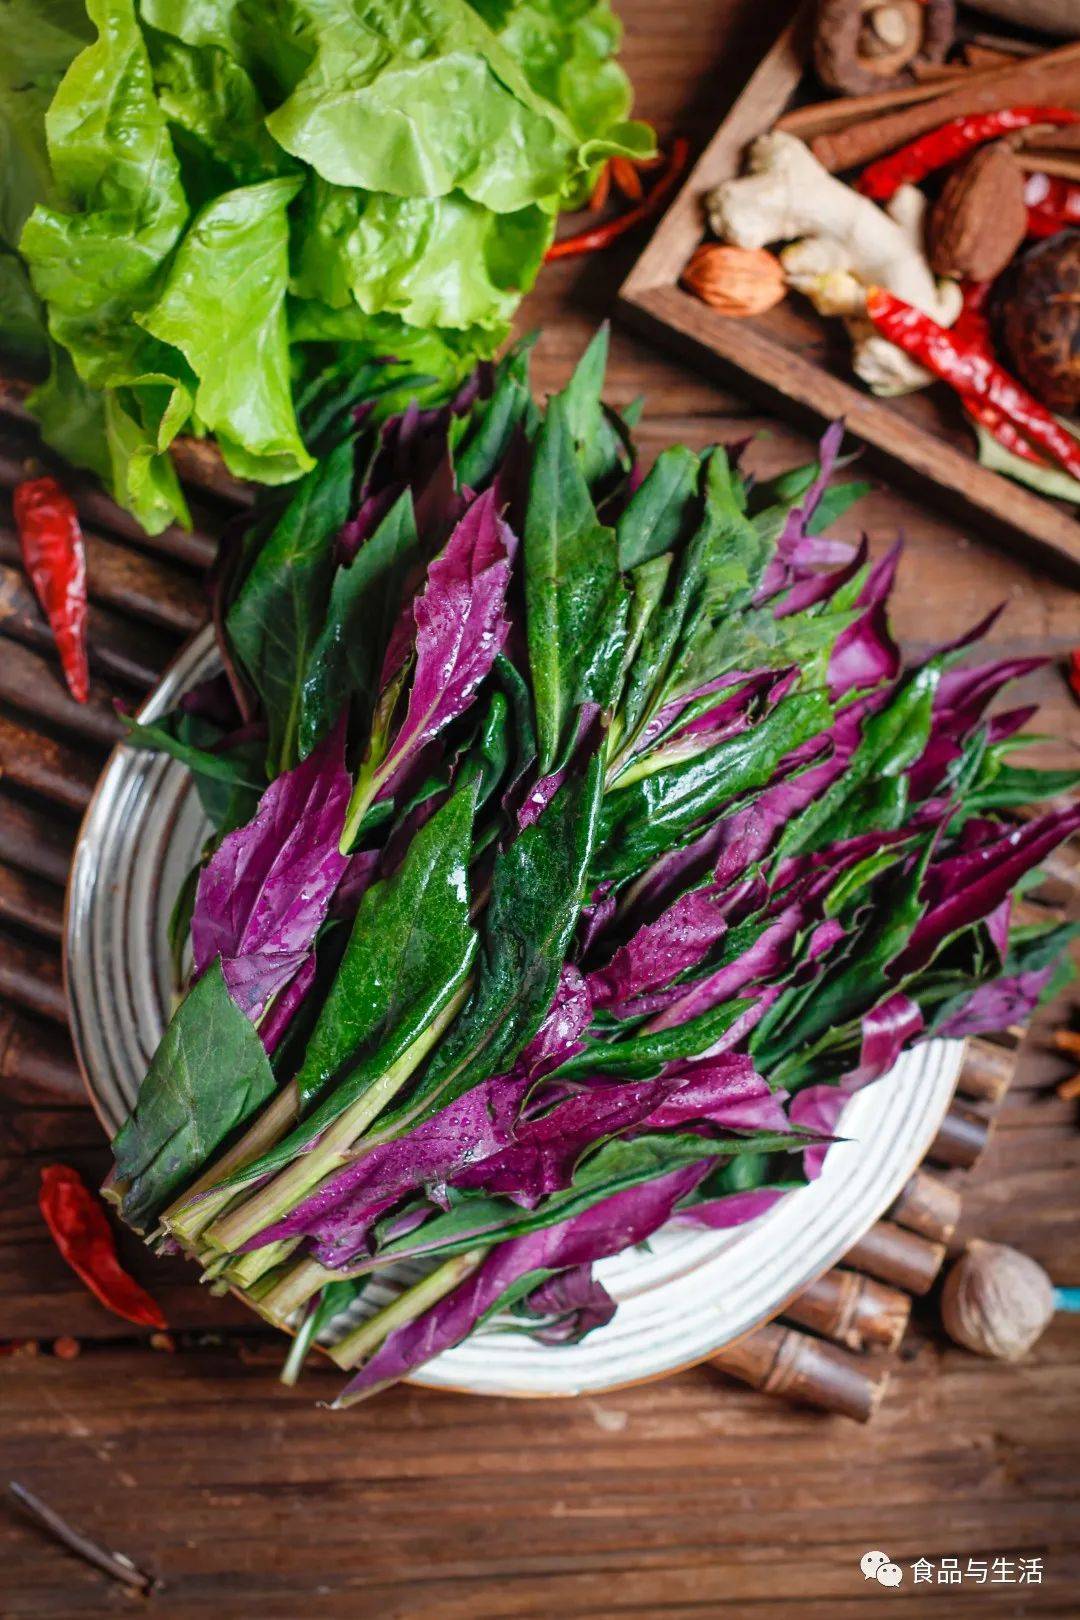 四川人爱吃的“血皮菜”是怎样一种蔬菜？血皮菜到底有没有毒？_食用_人体_地区